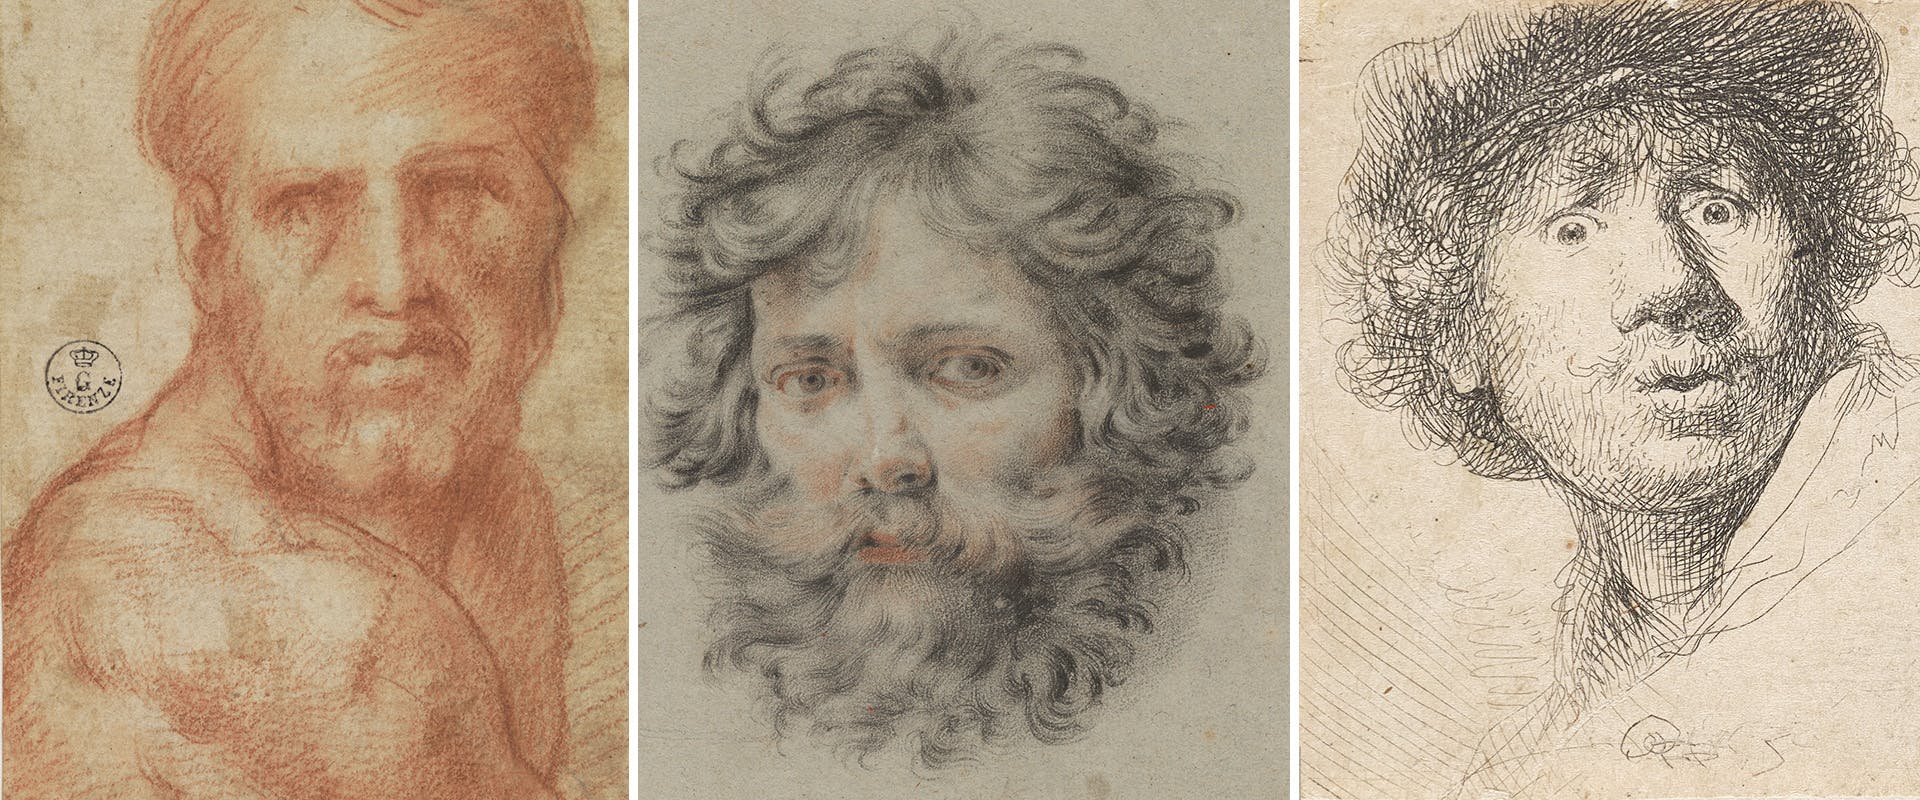 Copertina illustrativa della mostra sugli autoritratti su carta del rinascimento con Pontormo, Cristofano Allori, Rembrandt